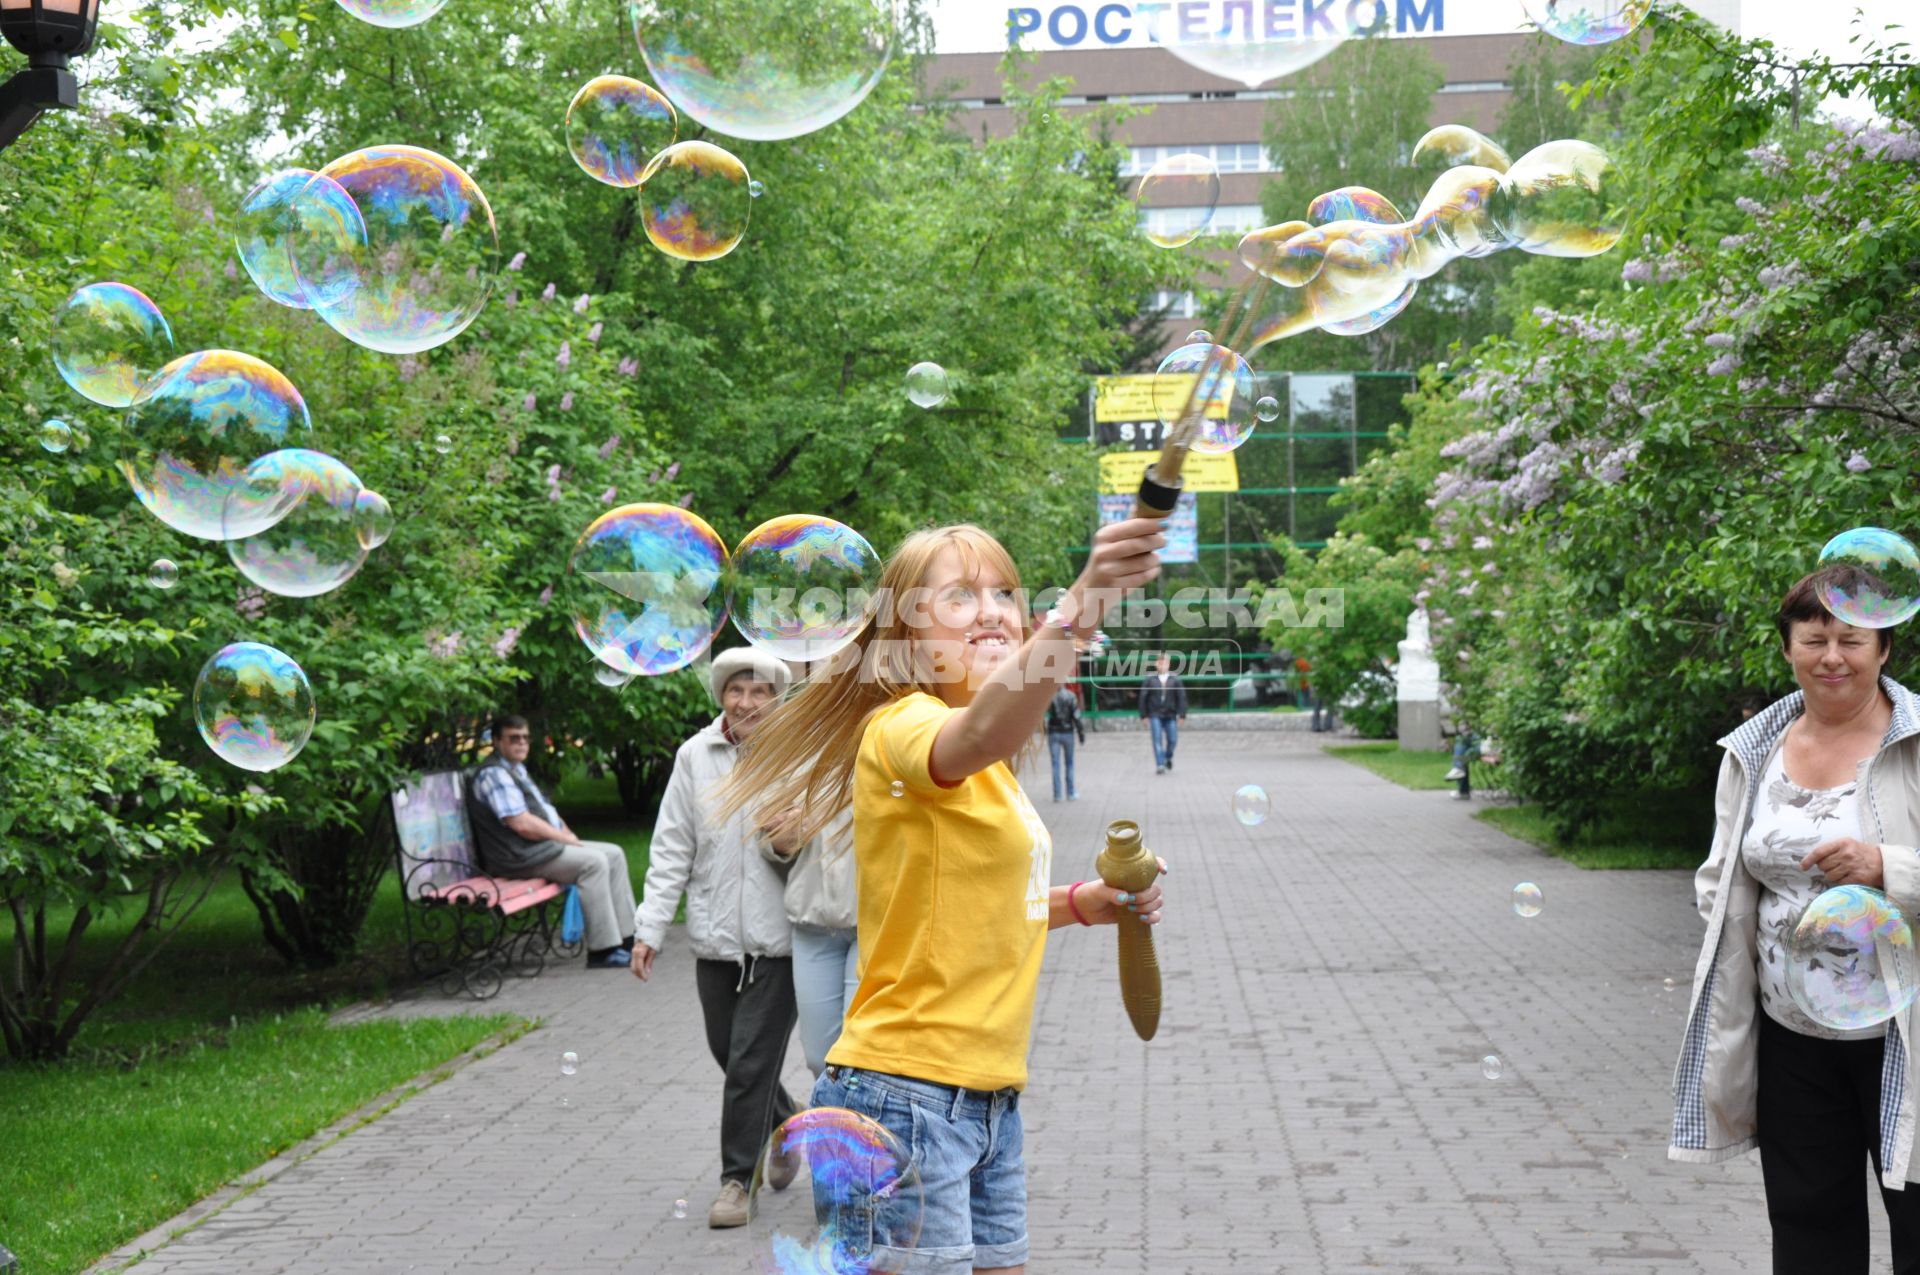 Девочка на улице пускает большие мыльные пузыри. 1 июня 2011 года.